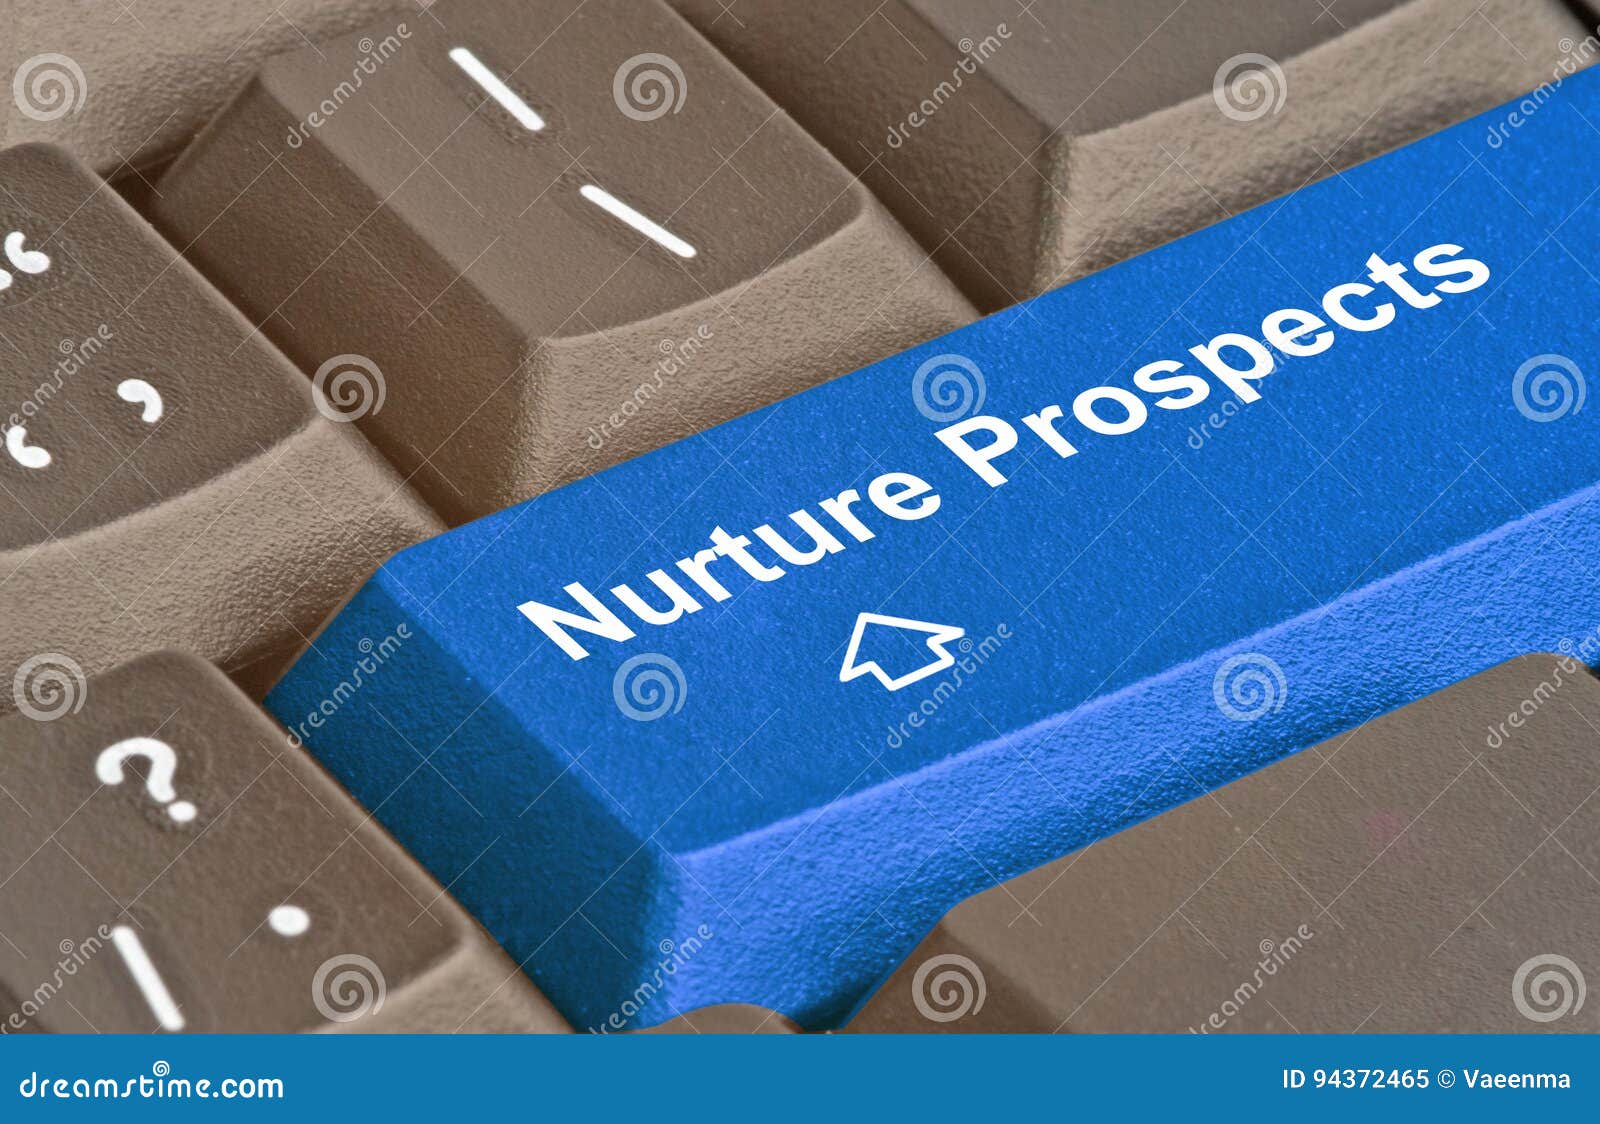 key to nurture prospects